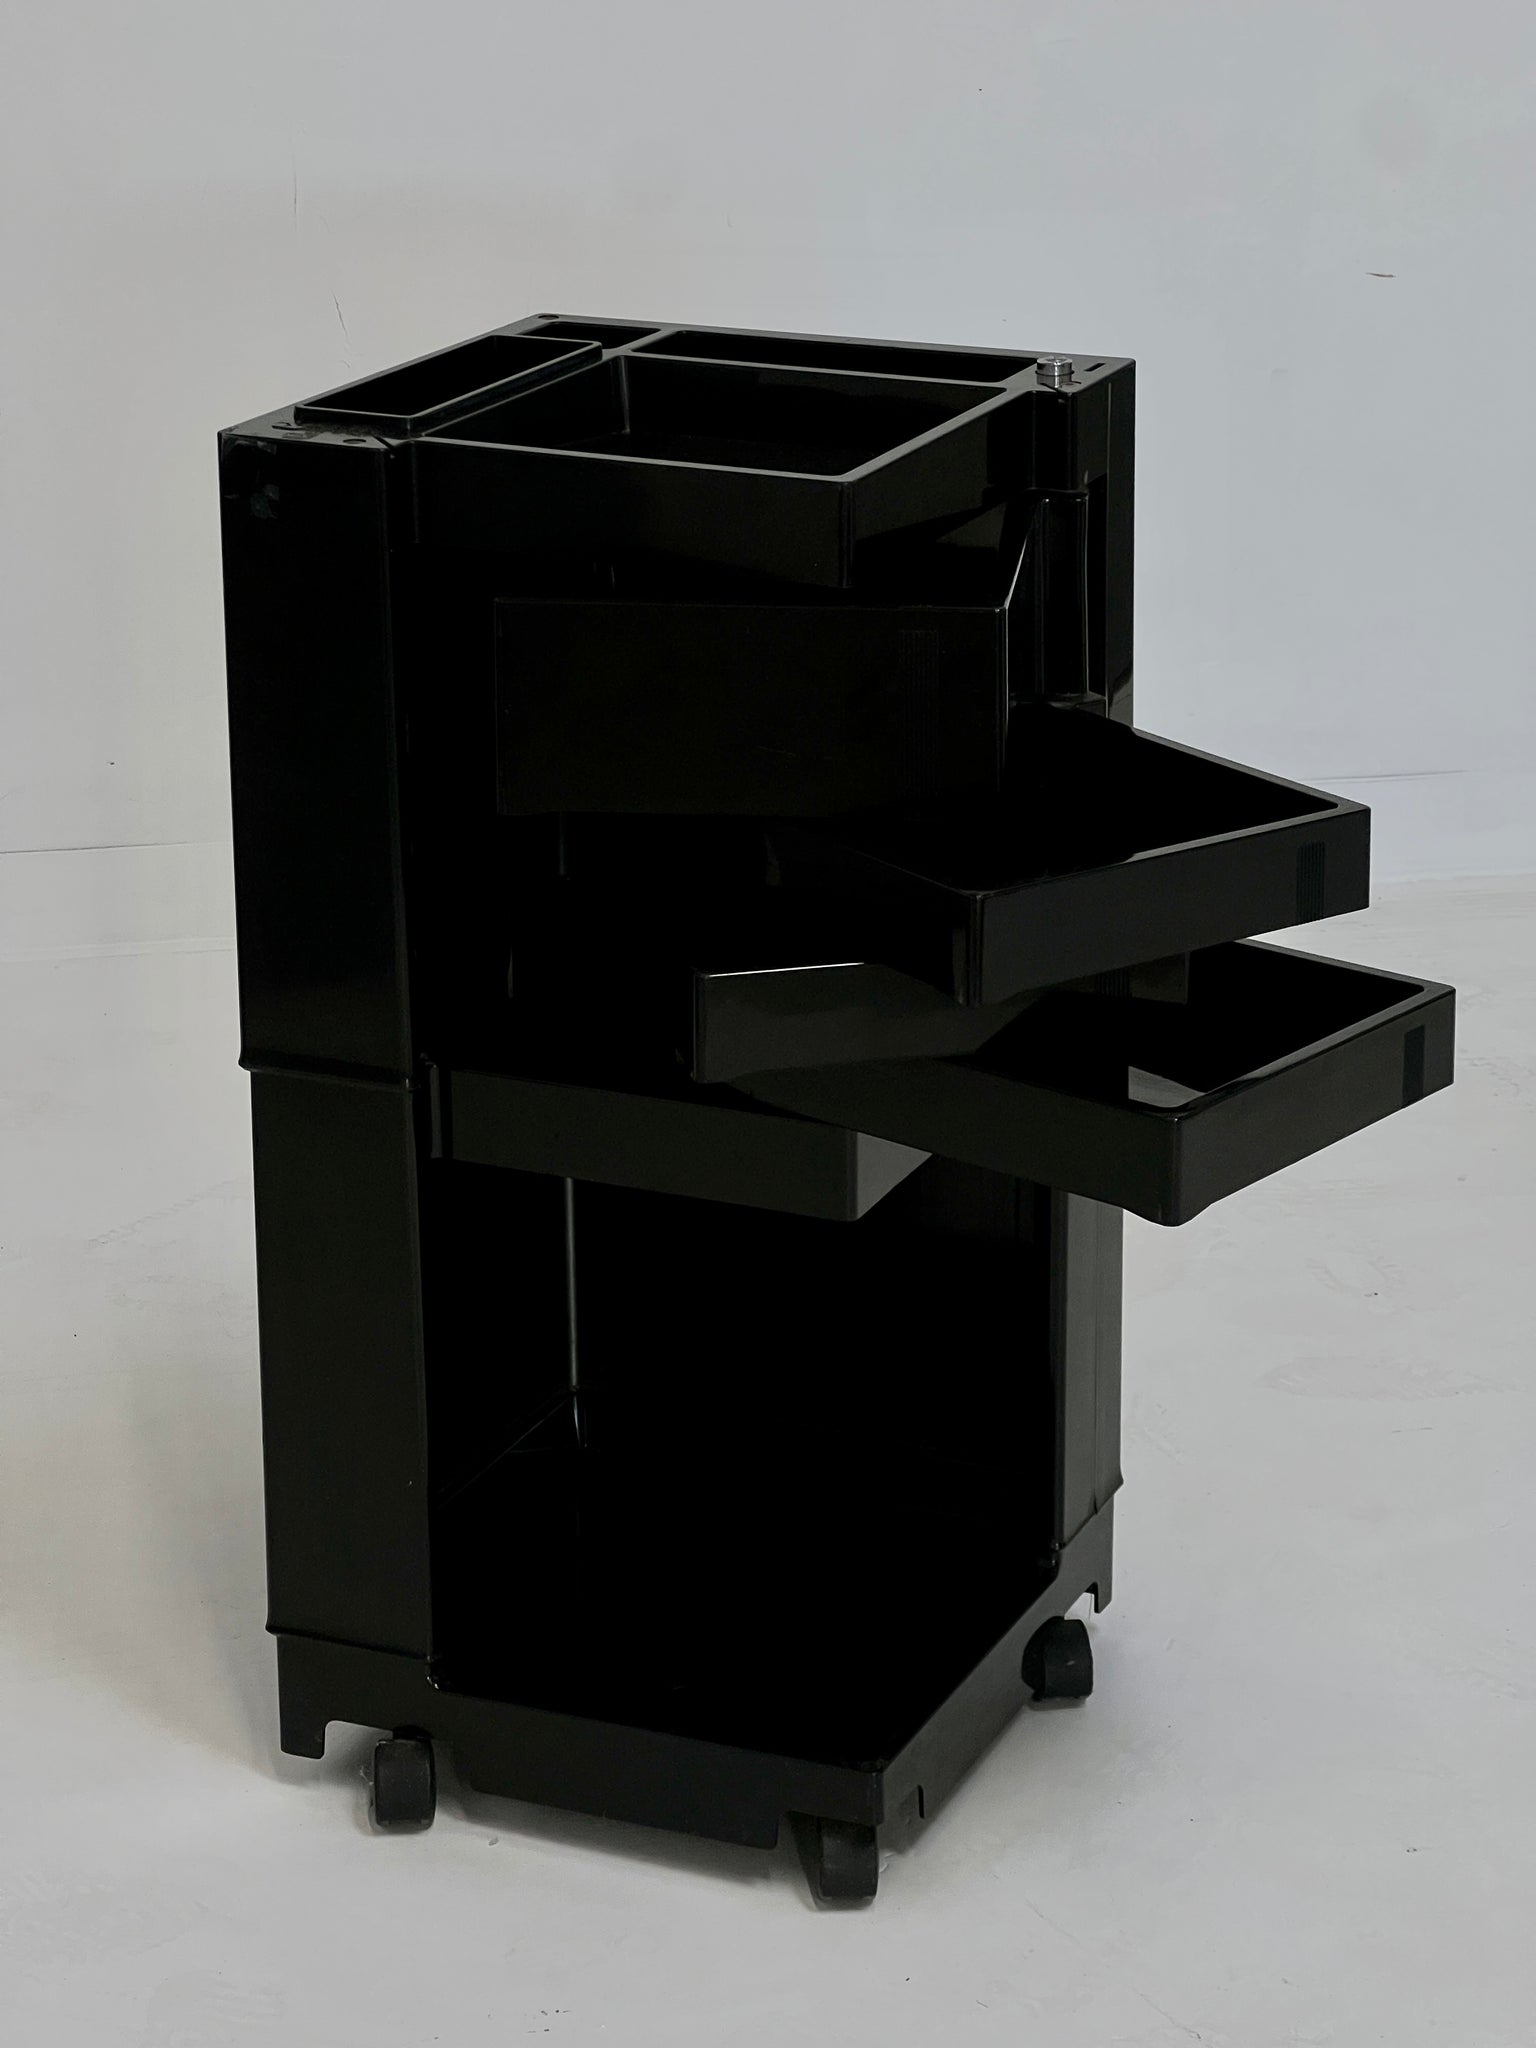 Black Trolley designed by Joe Colombo, 1970s